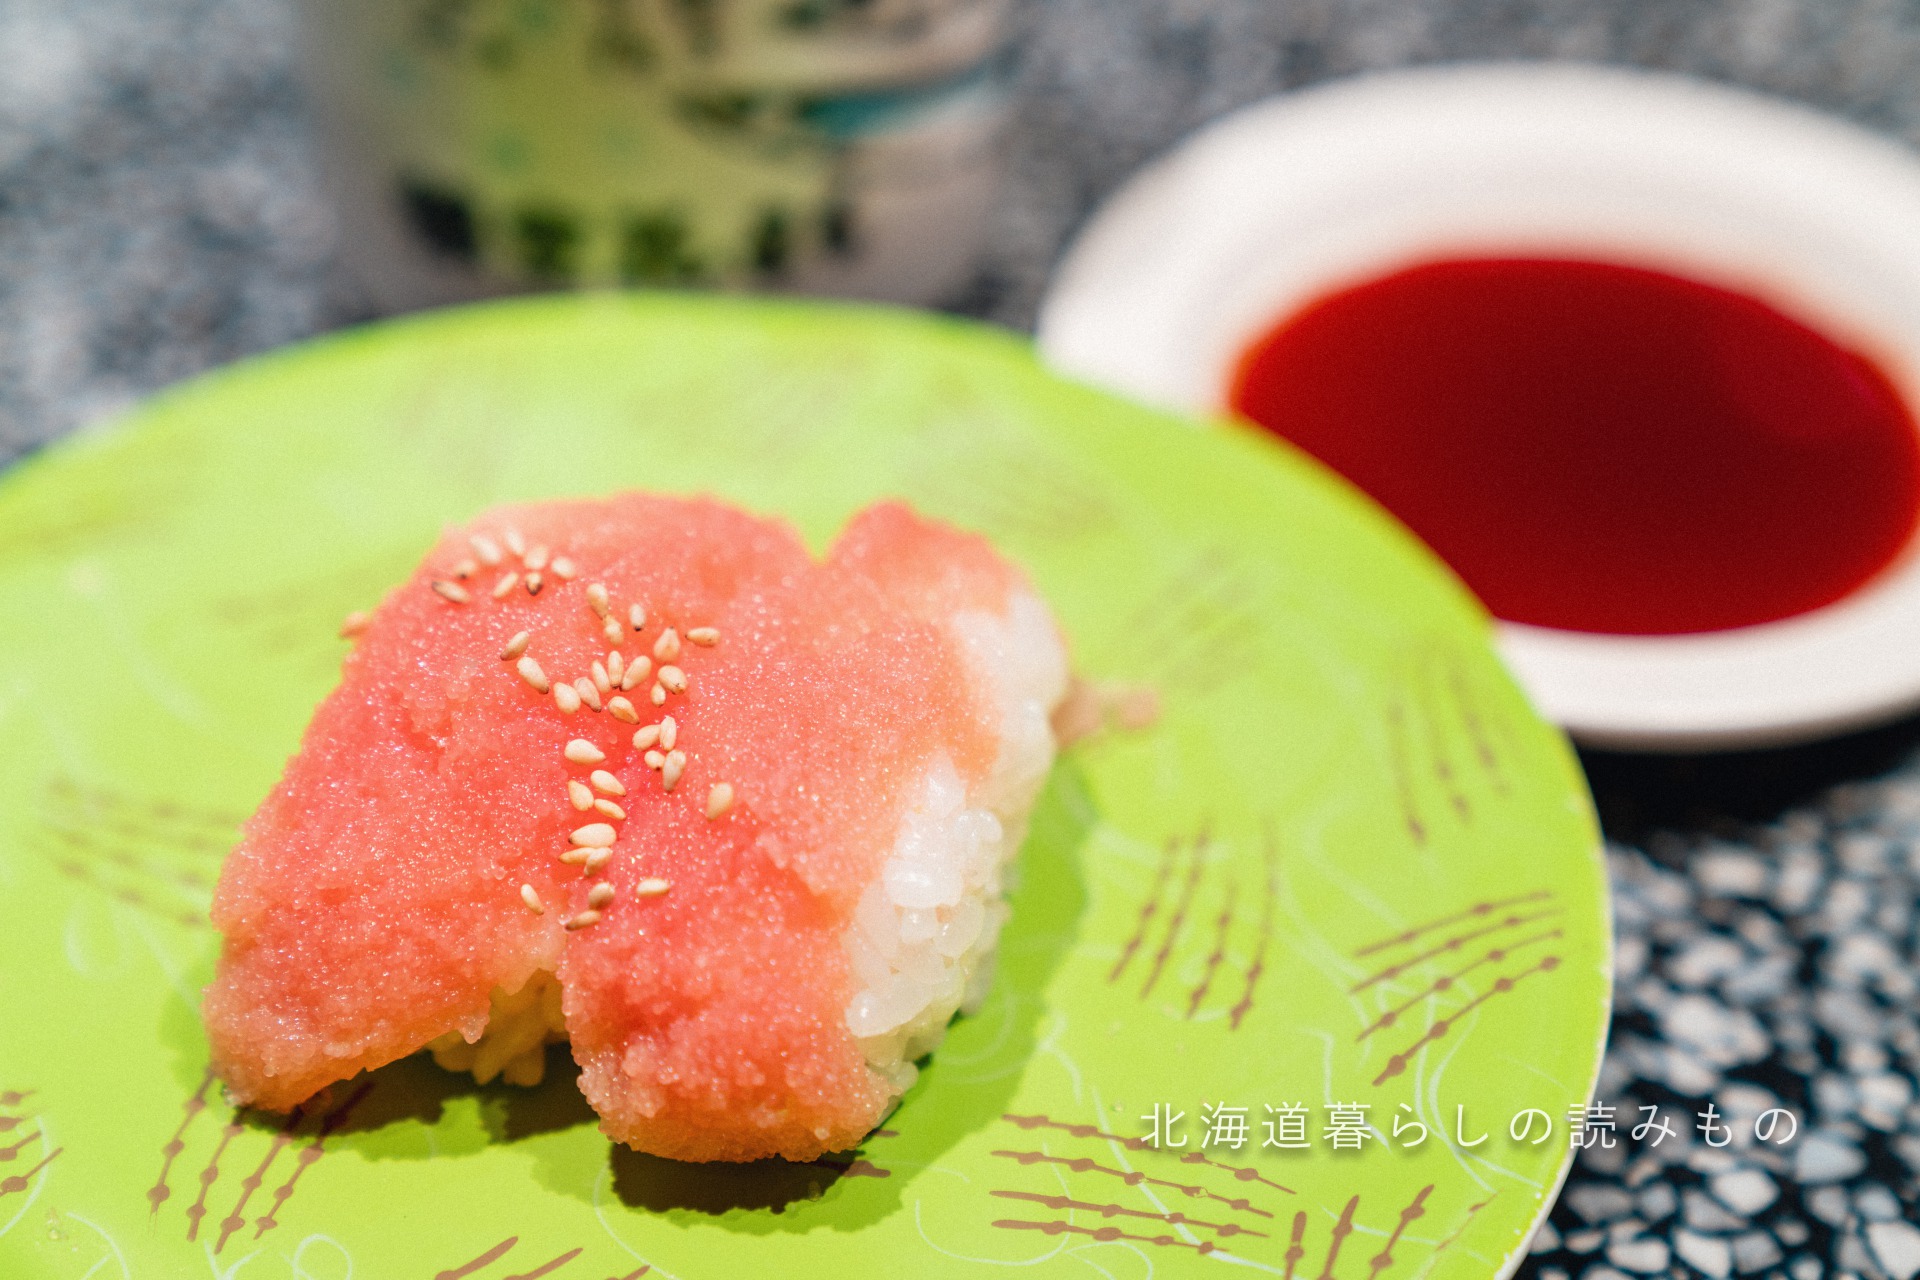 迴轉壽司根室花丸的菜單上的「鱈魚子」